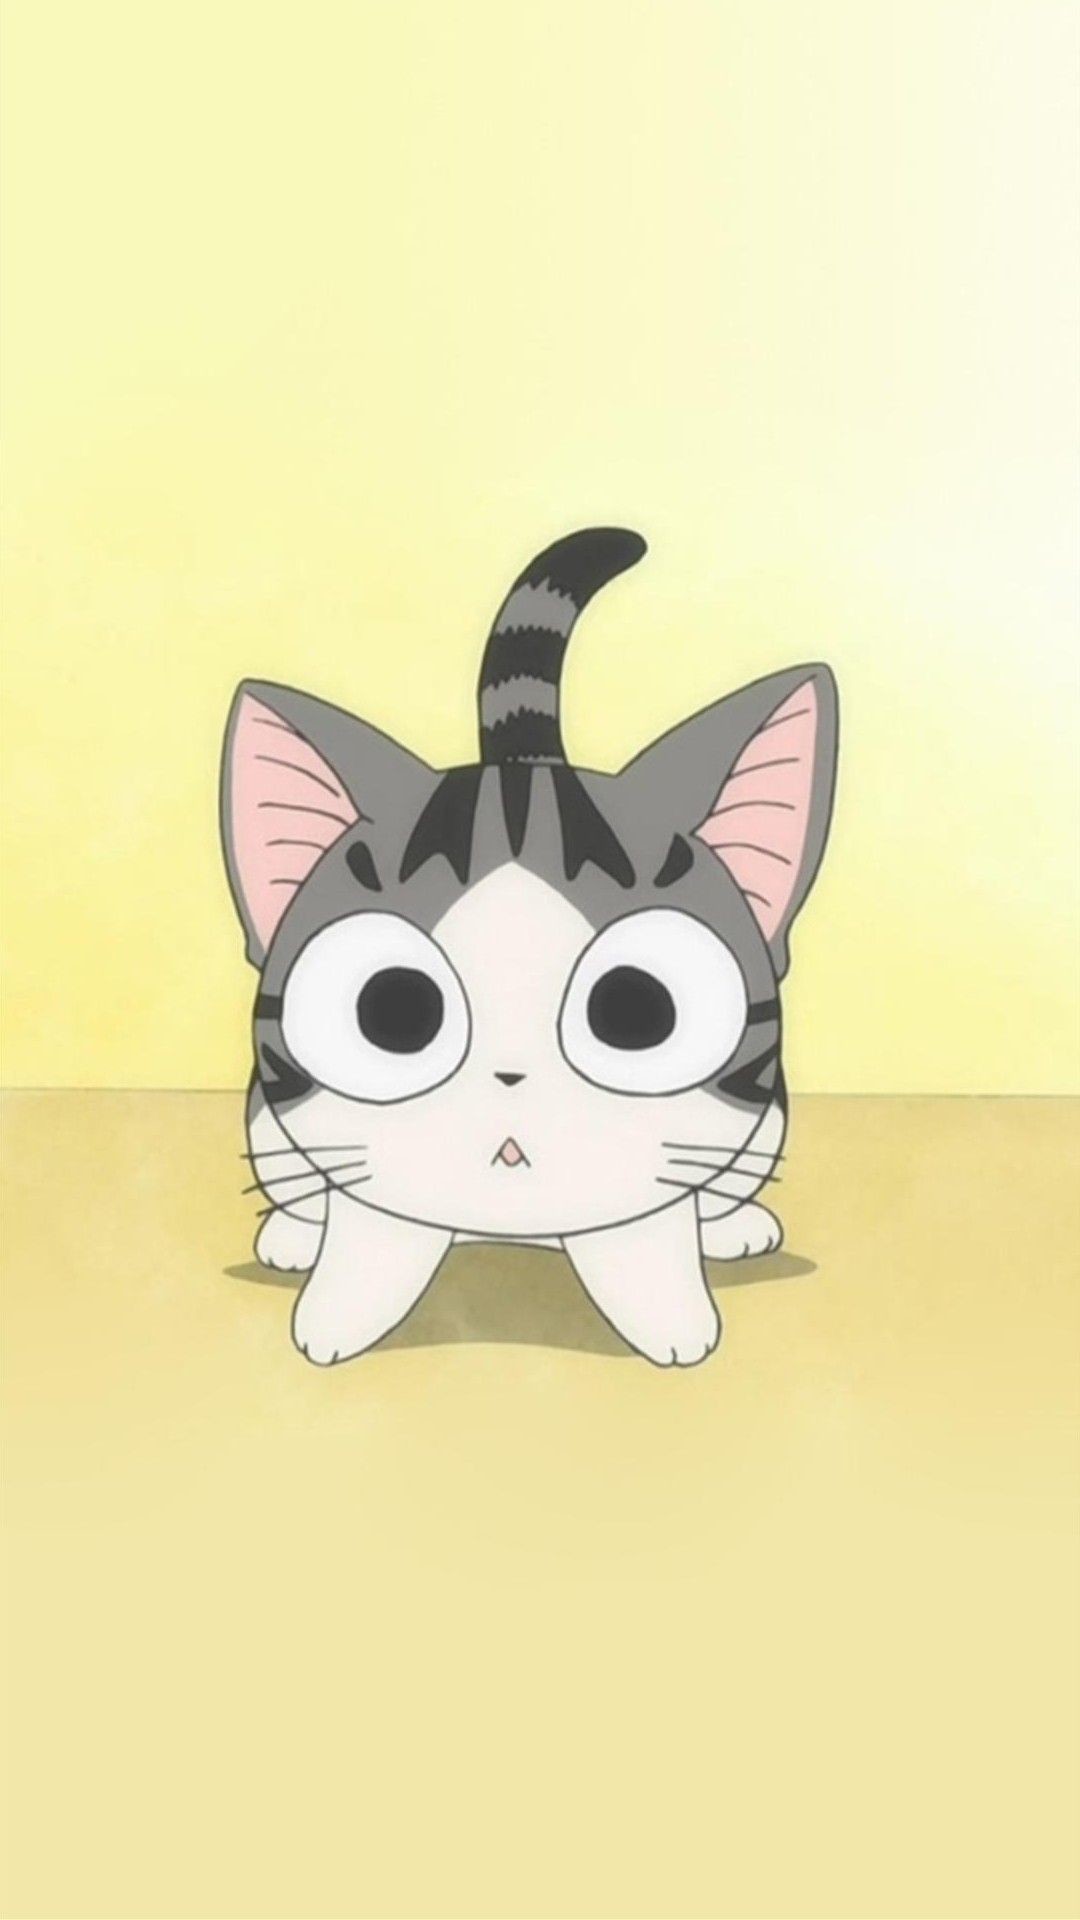 1080x1920  Cute Cat Iphone Wallpaper - Download Best Cute Cat Iphone ...">